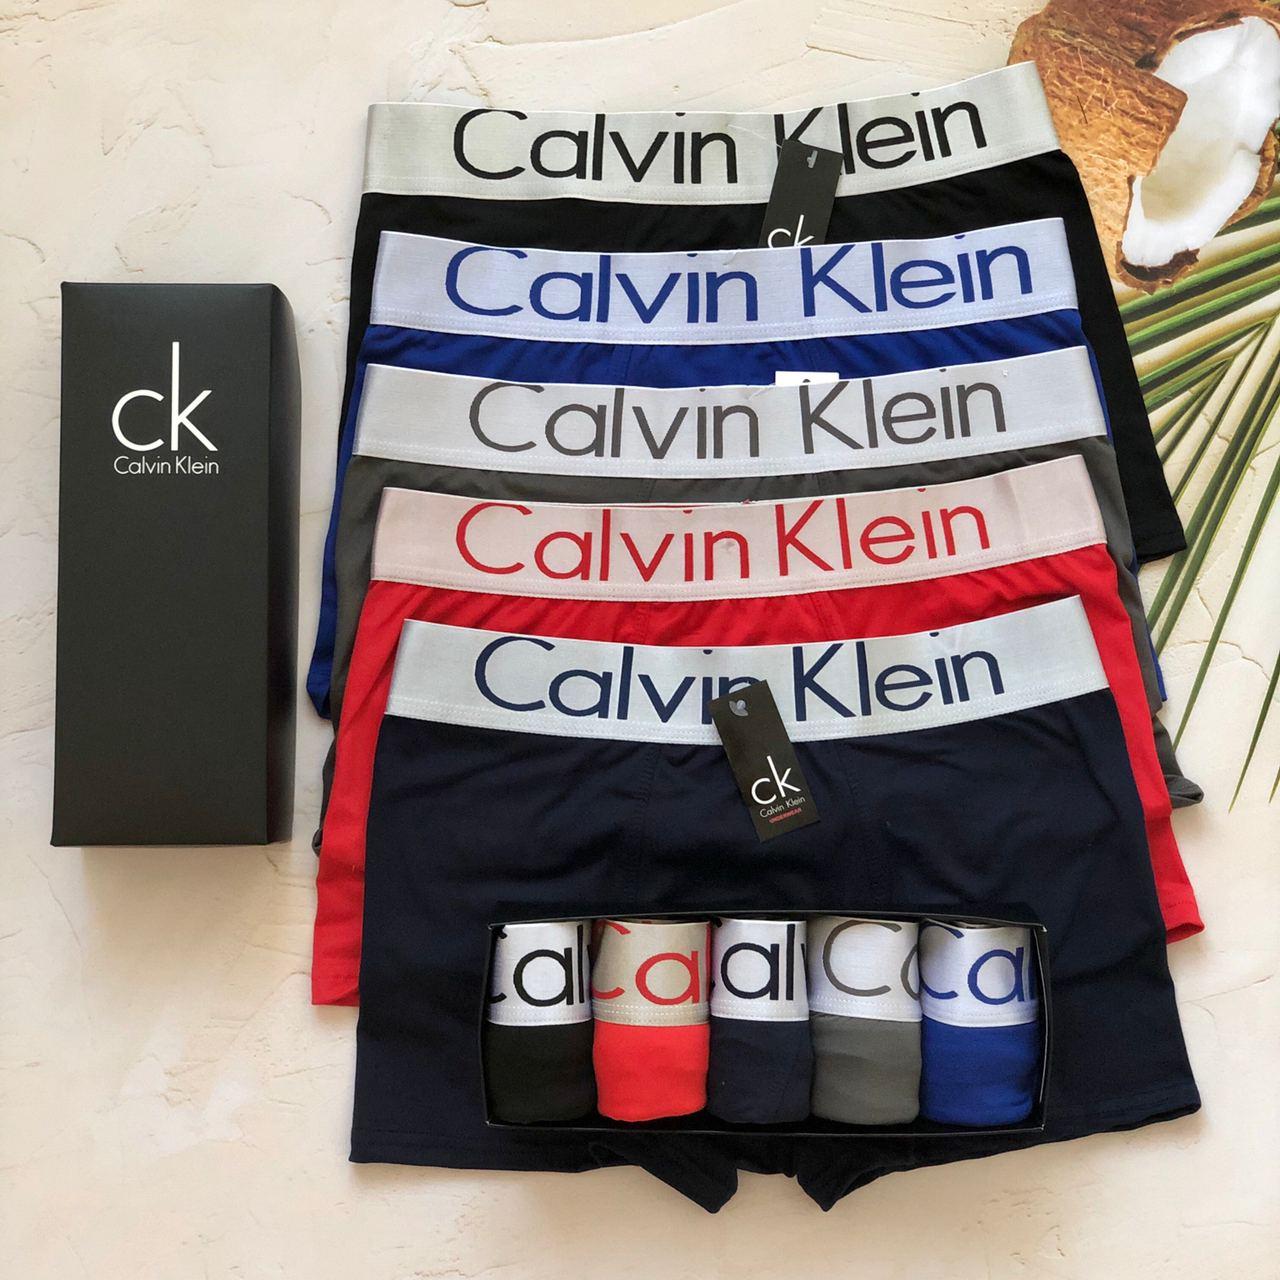 Відмінні труси, чоловічий набір Calvin Klein, білизна Кельвін Кляйн, класичні боксерки 5 шт. Репліка!